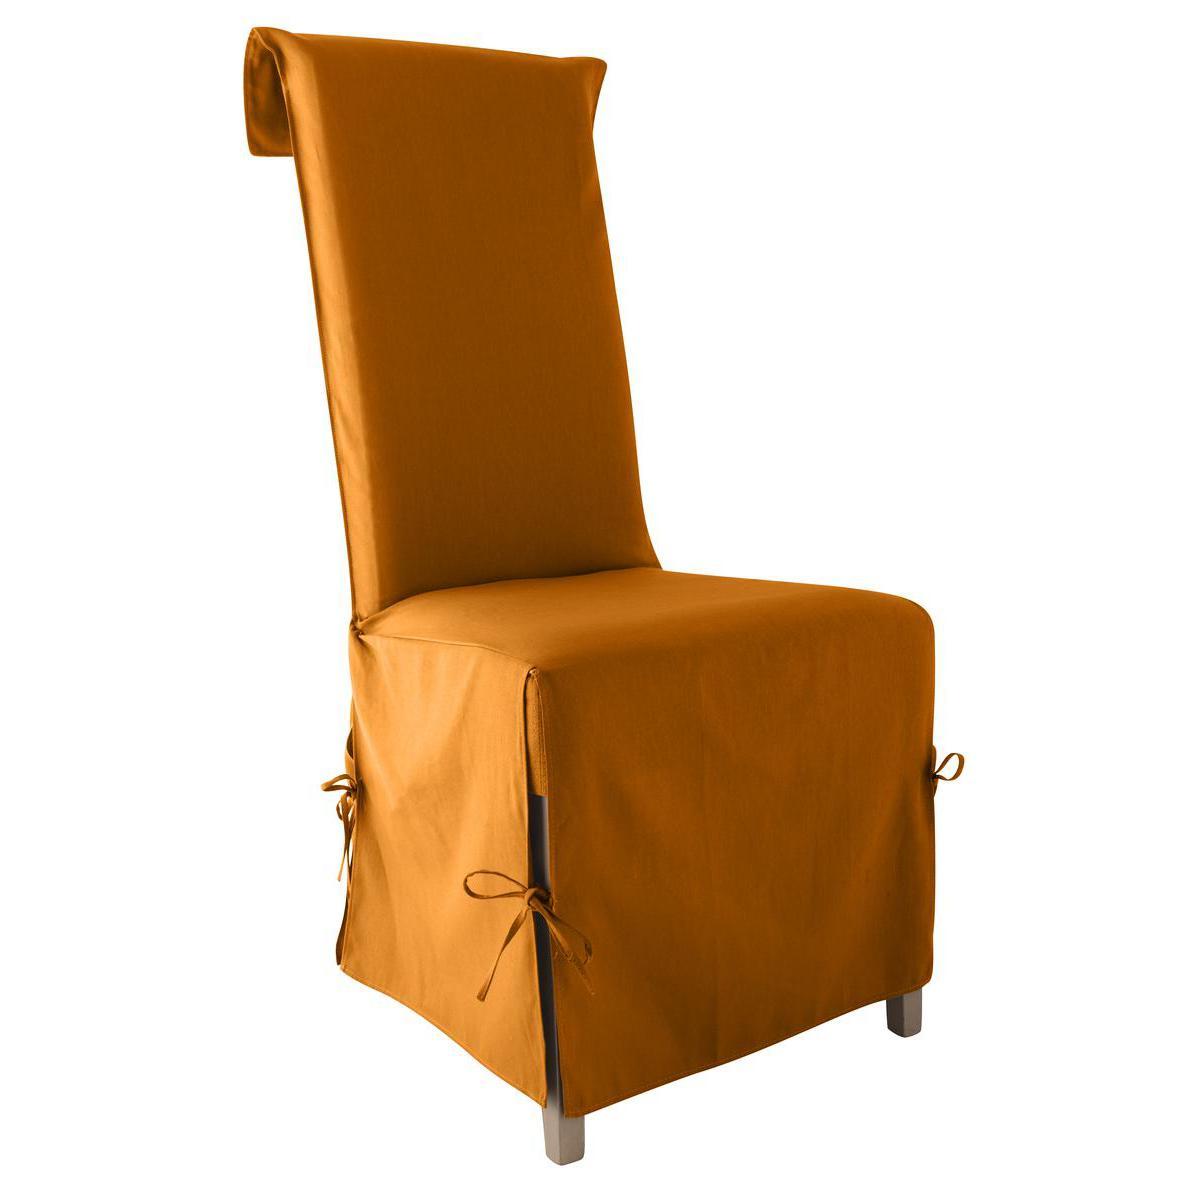 Housse de chaise panama - 40 x 40 x 72 cm - 100% coton - Orange